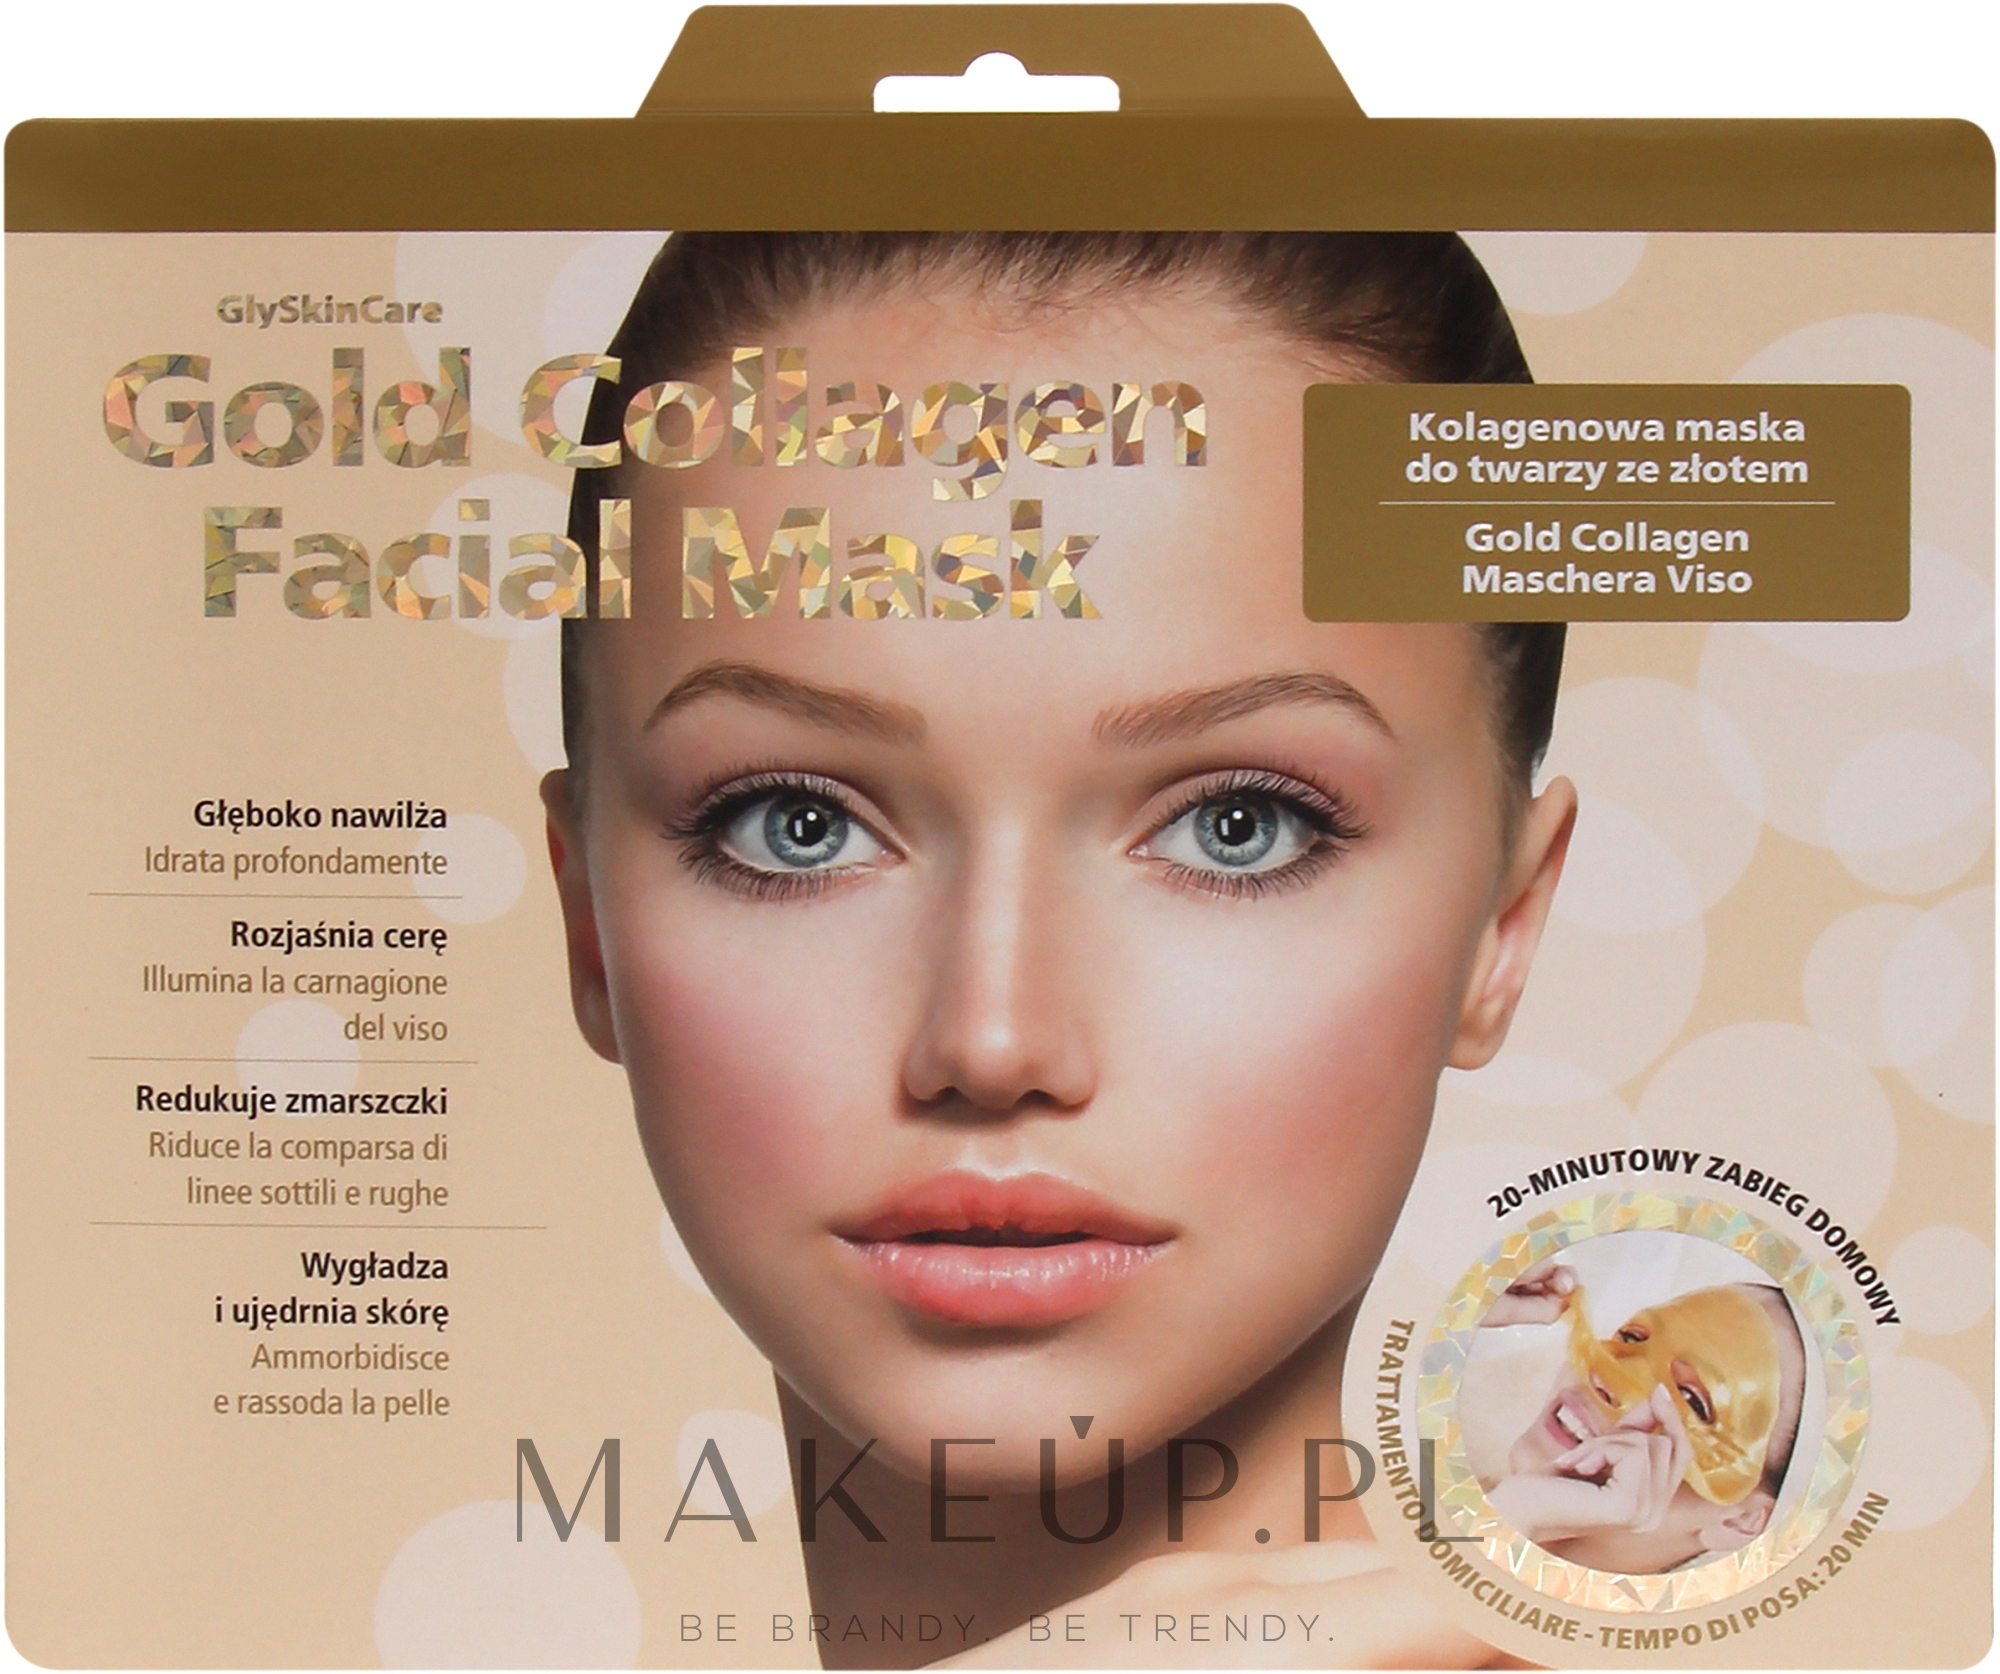 Kolagenowa maska do twarzy ze złotem - GlySkinCare Gold Collagen Facial Mask — Zdjęcie 1 szt.